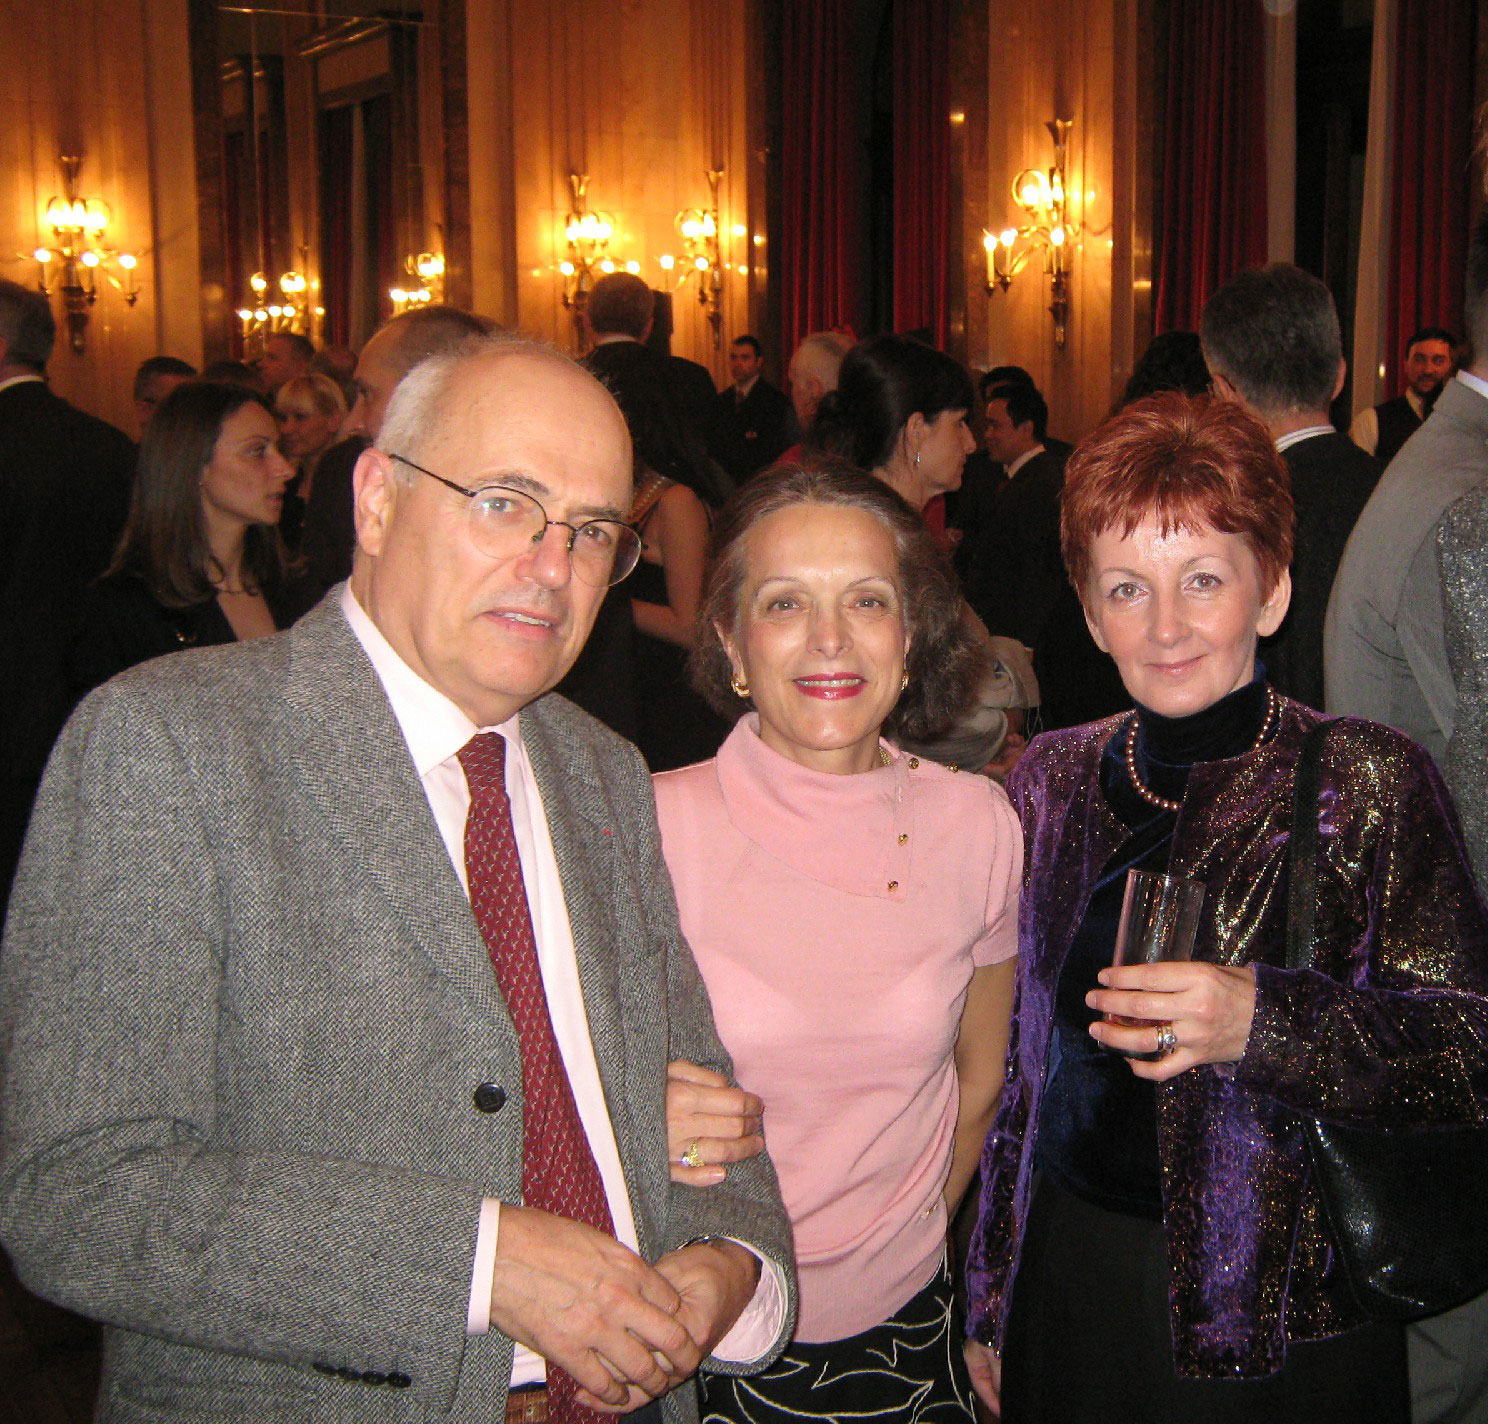 Њ.Е. амбасадор Француске у Србији Жан Франсоа Терал са супругом 2009.